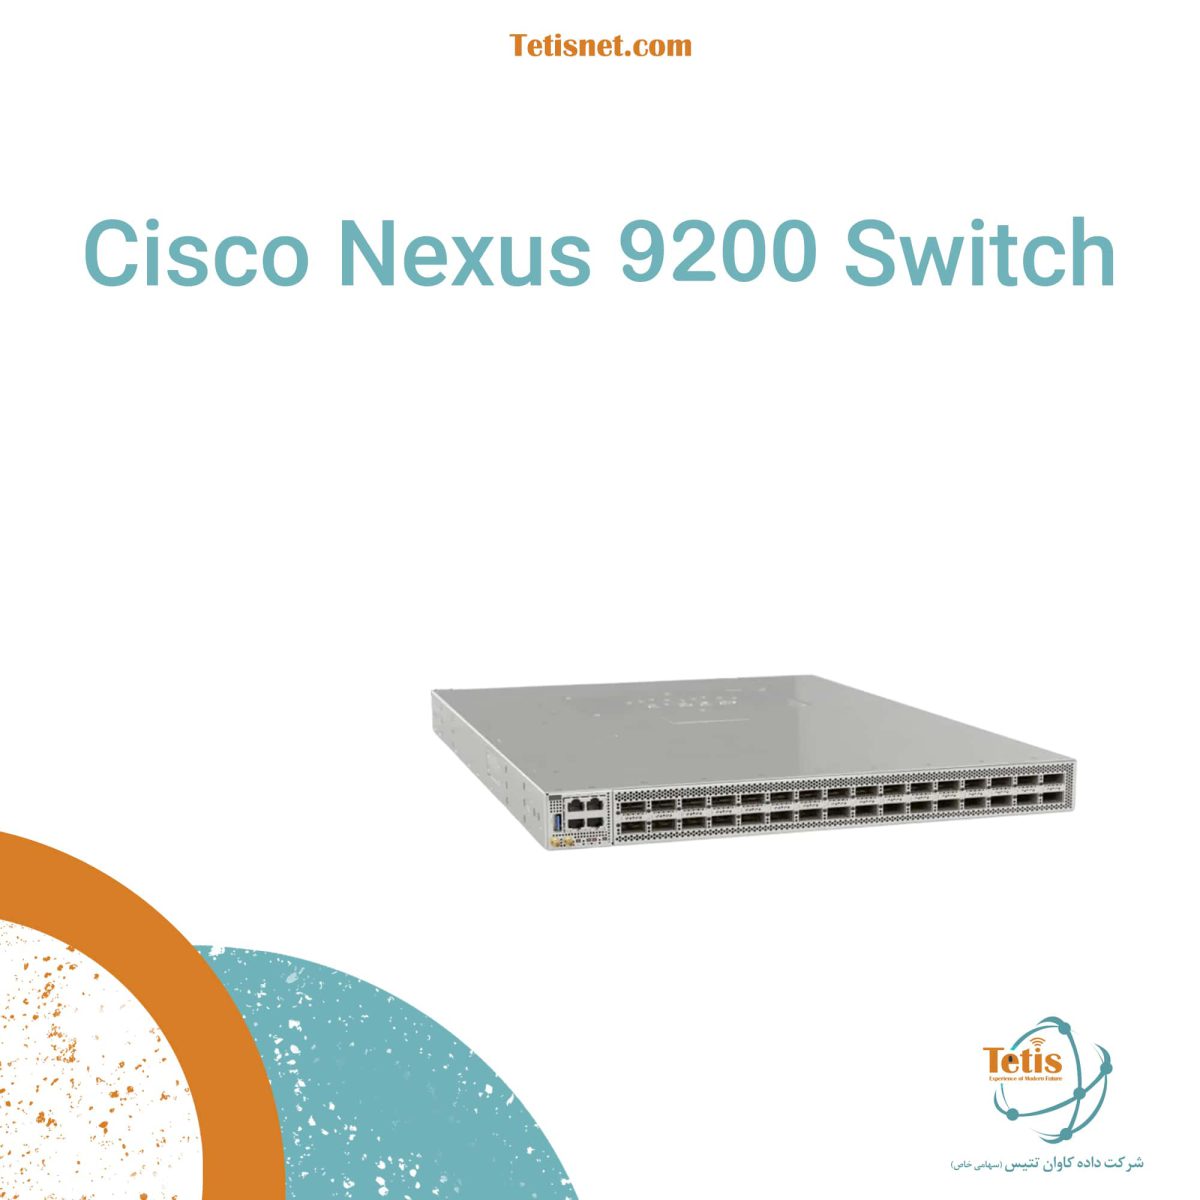 Cisco Nexus 9200 Switch